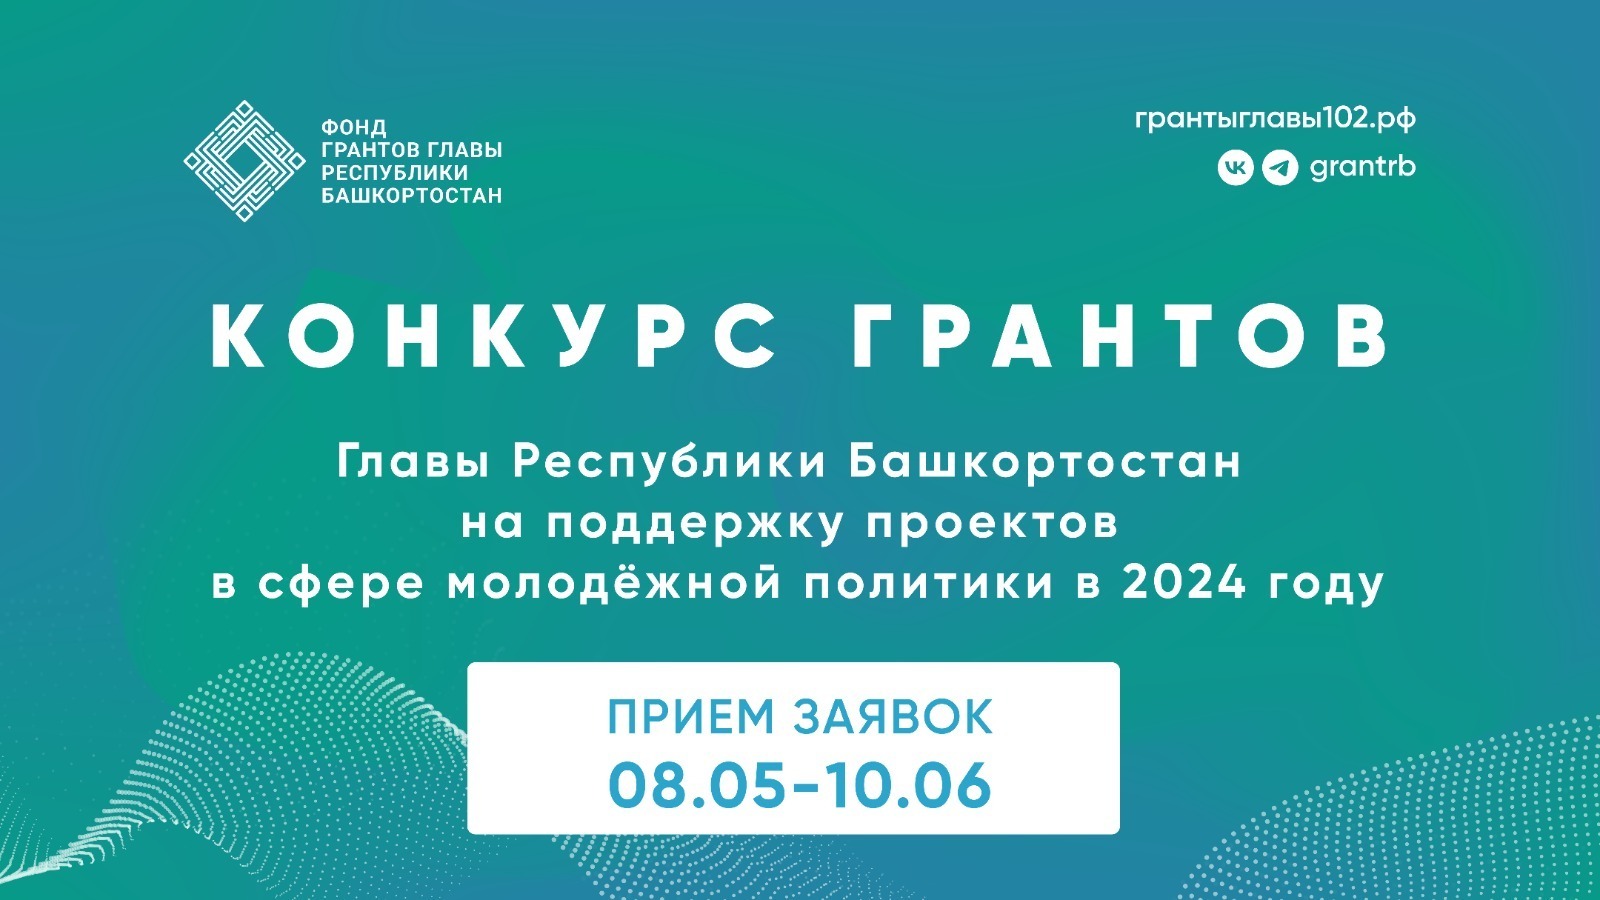 Стартовал Конкурс грантов Главы Республики Башкортостан на поддержку проектов в сфере молодежной политики в 2024 году